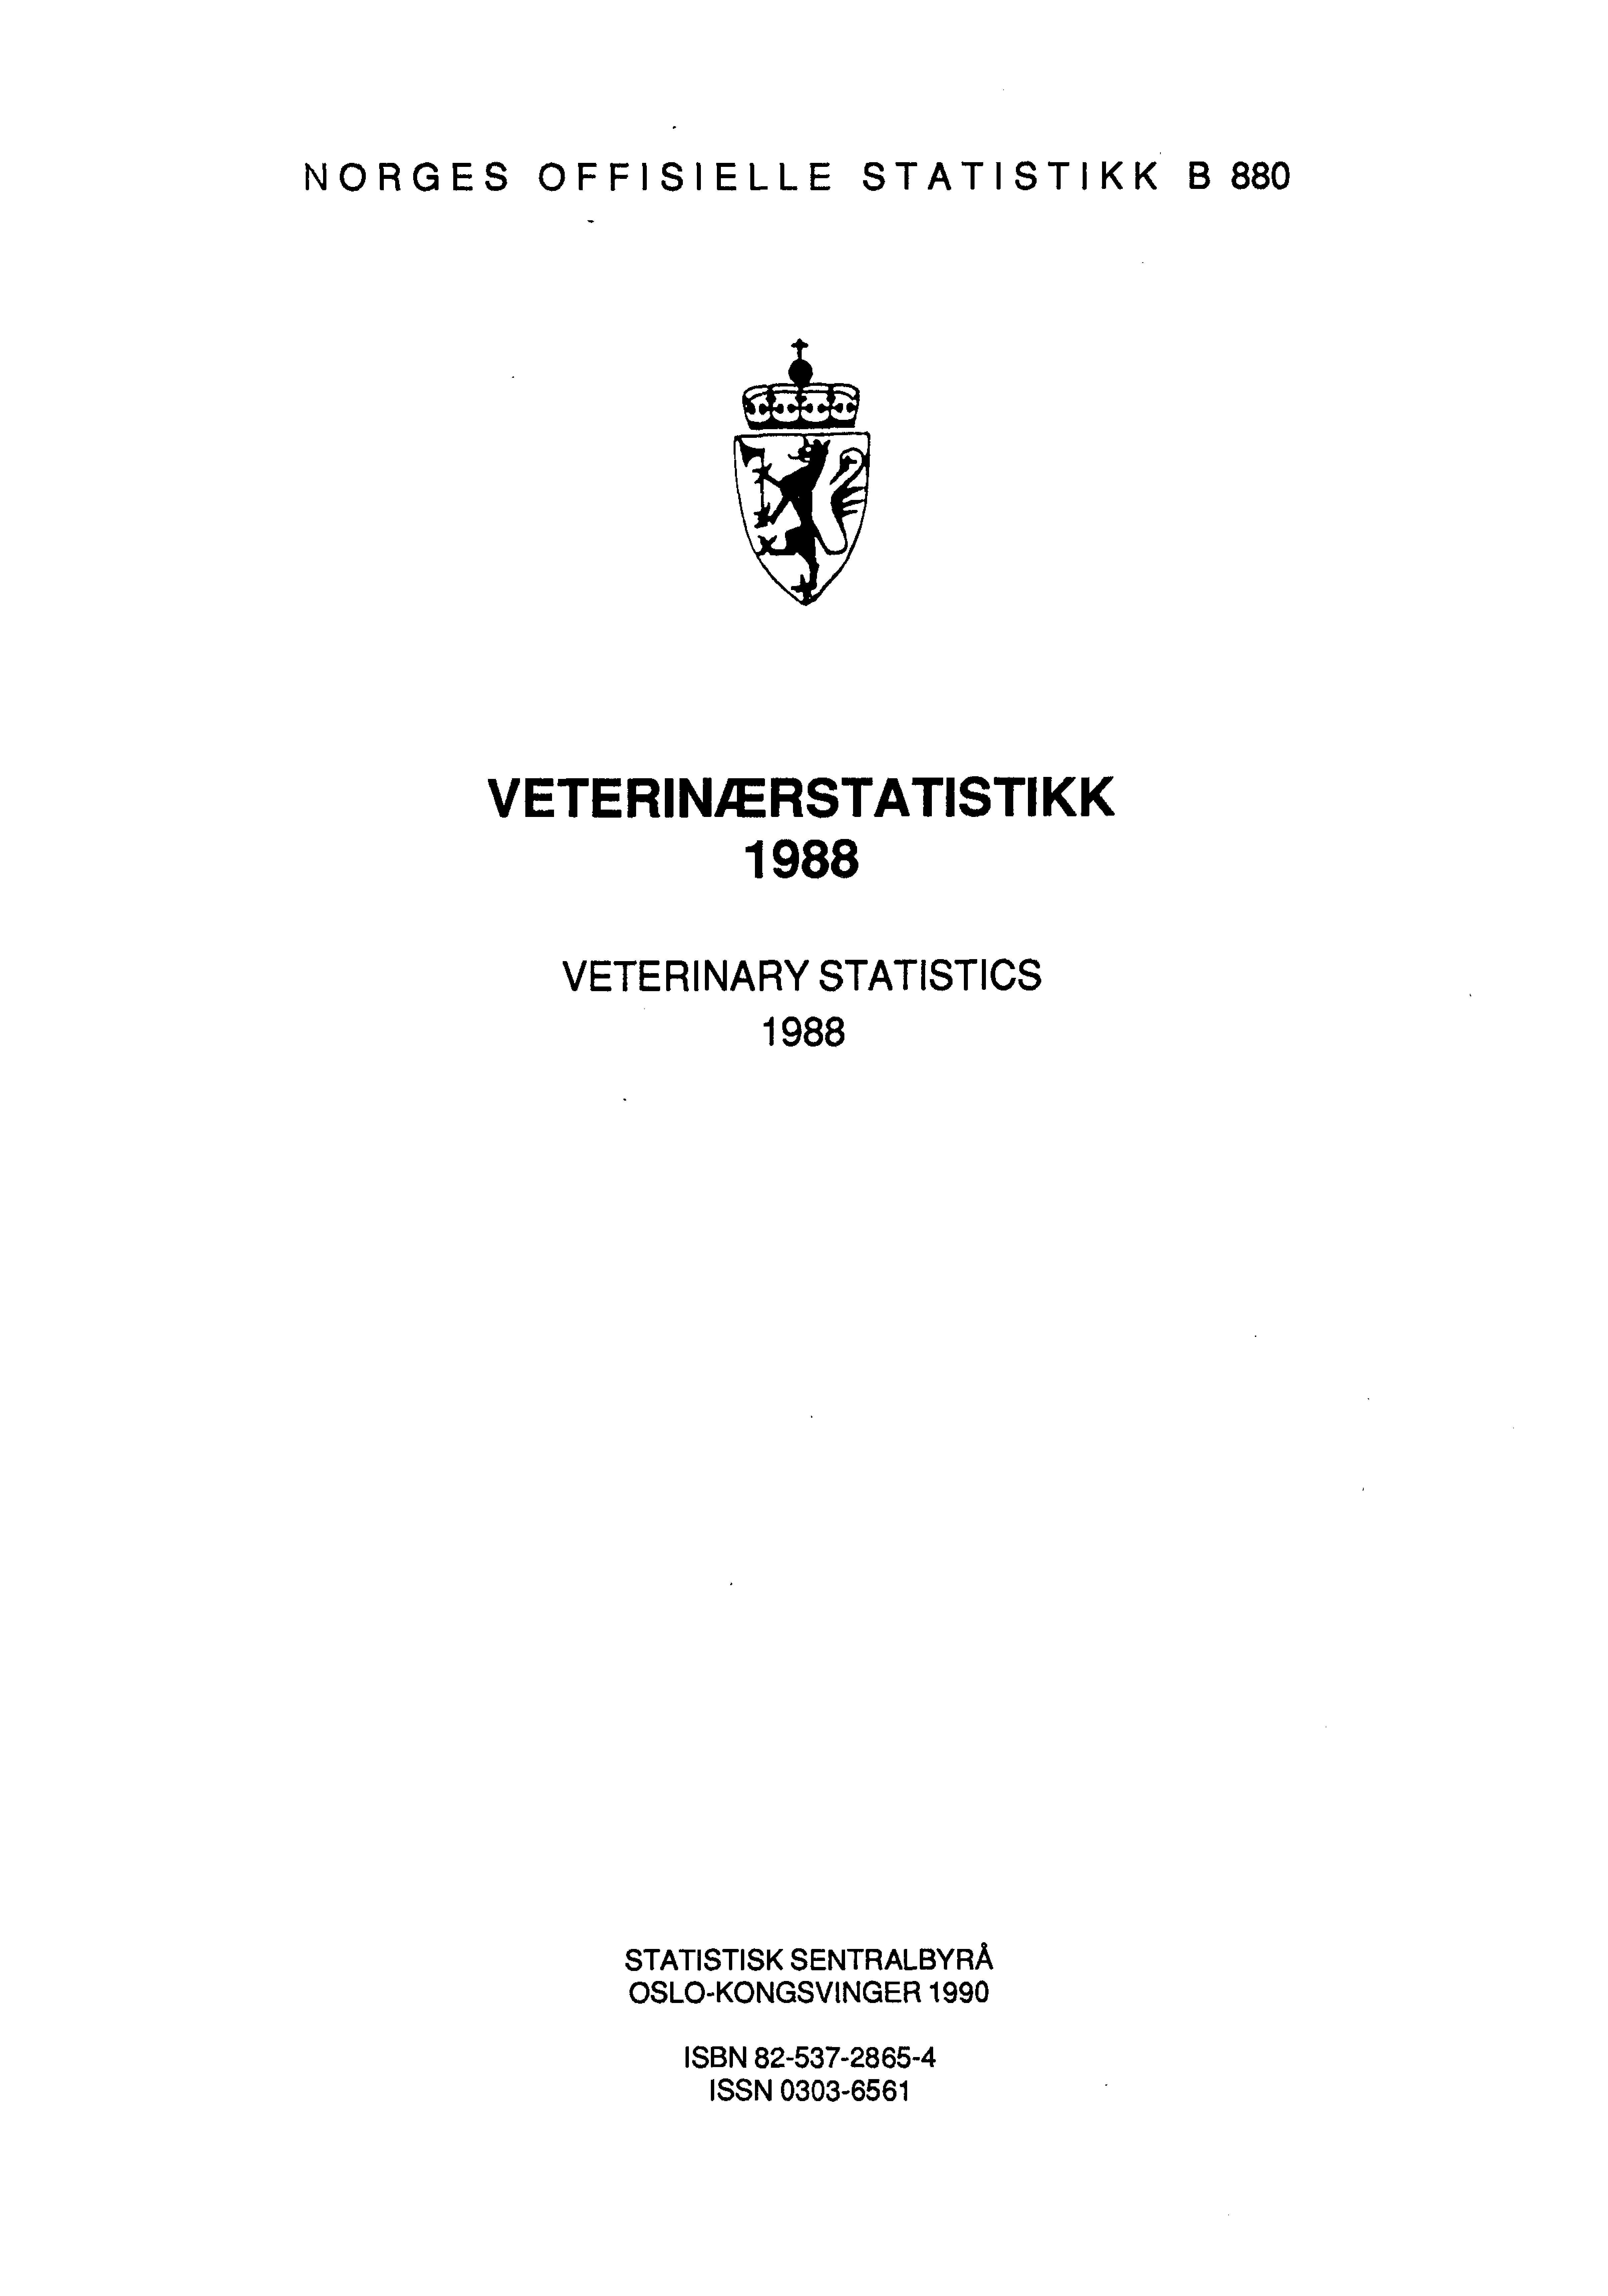 NORGES OFFISIELLE STATISTIKK B880 VETERINÆRSTATISTIKK 1988 VETERINARY STATISTICS